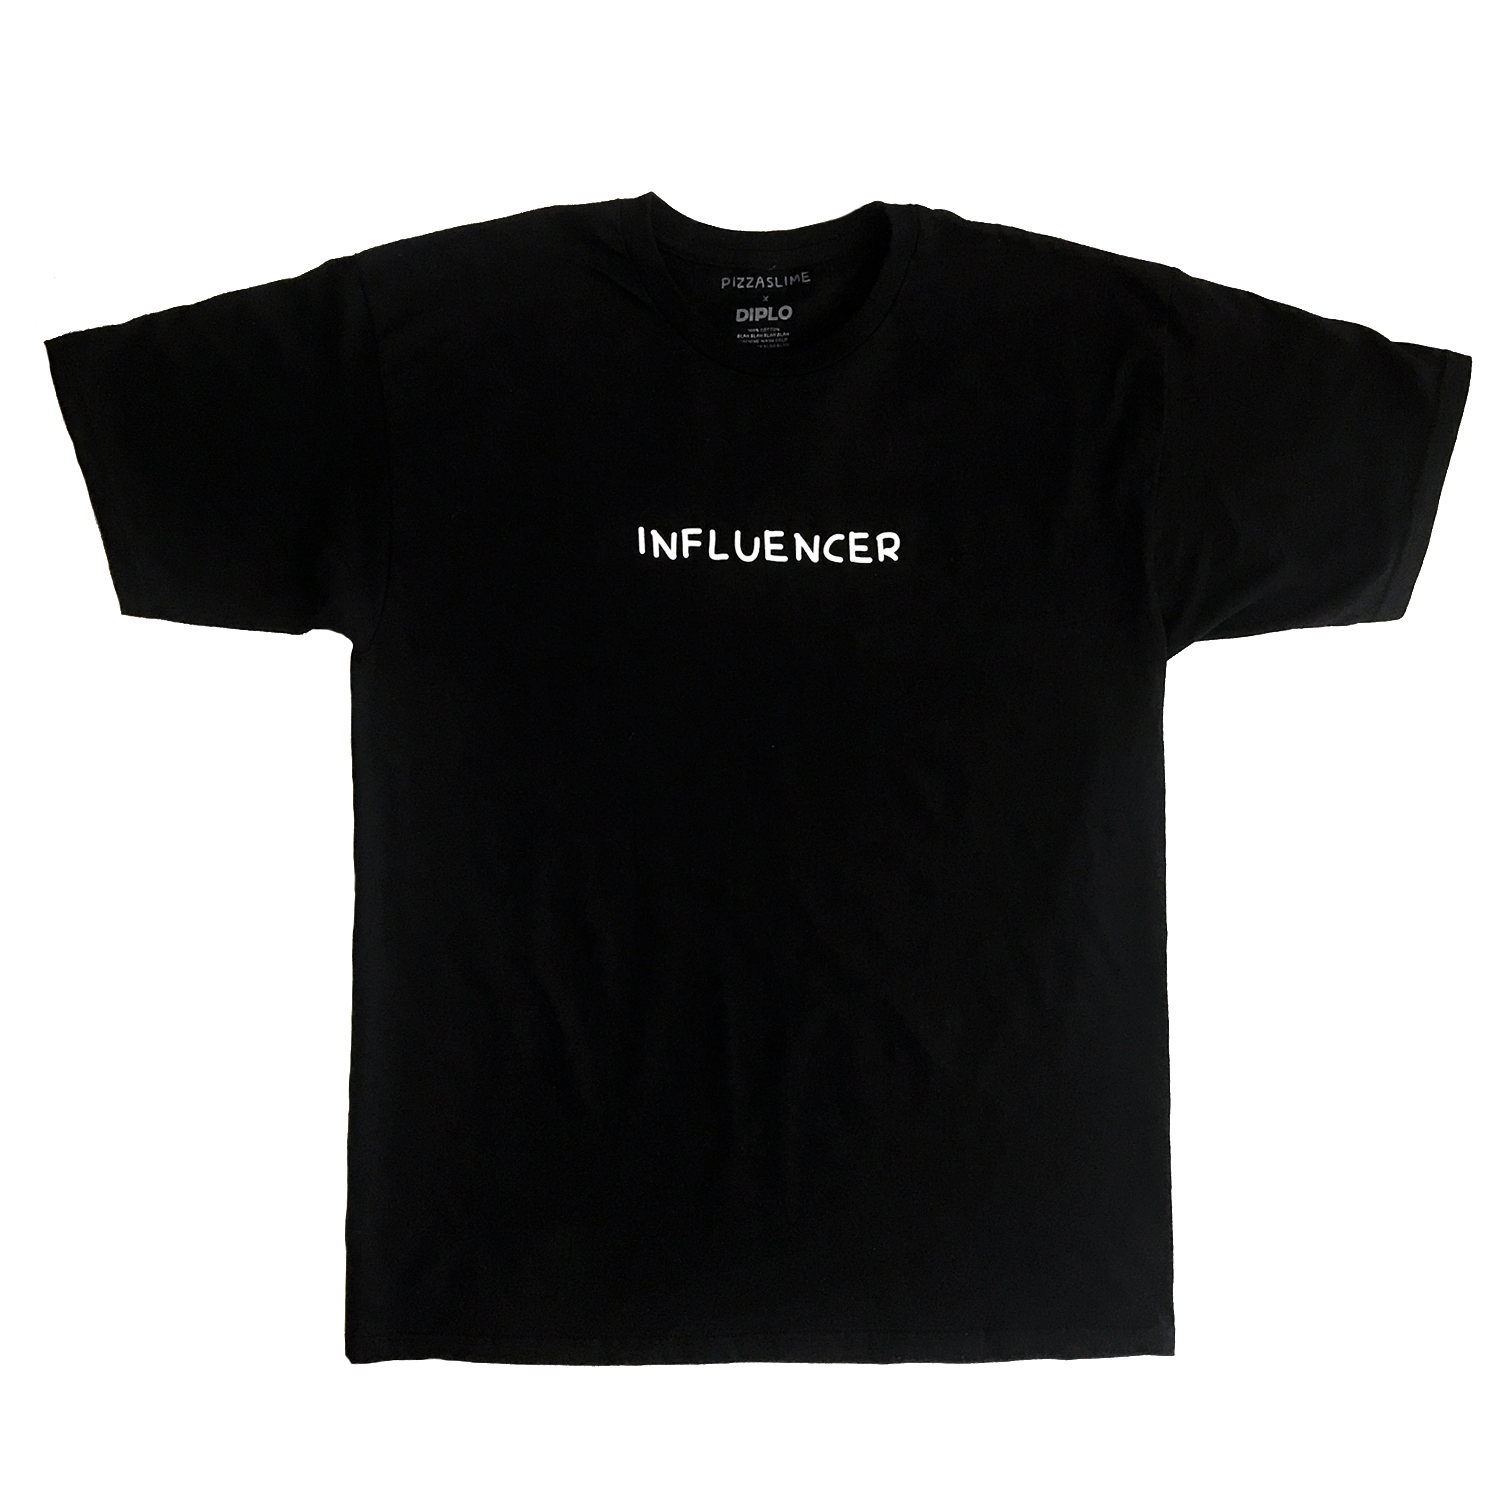 "influencer" t-shirt